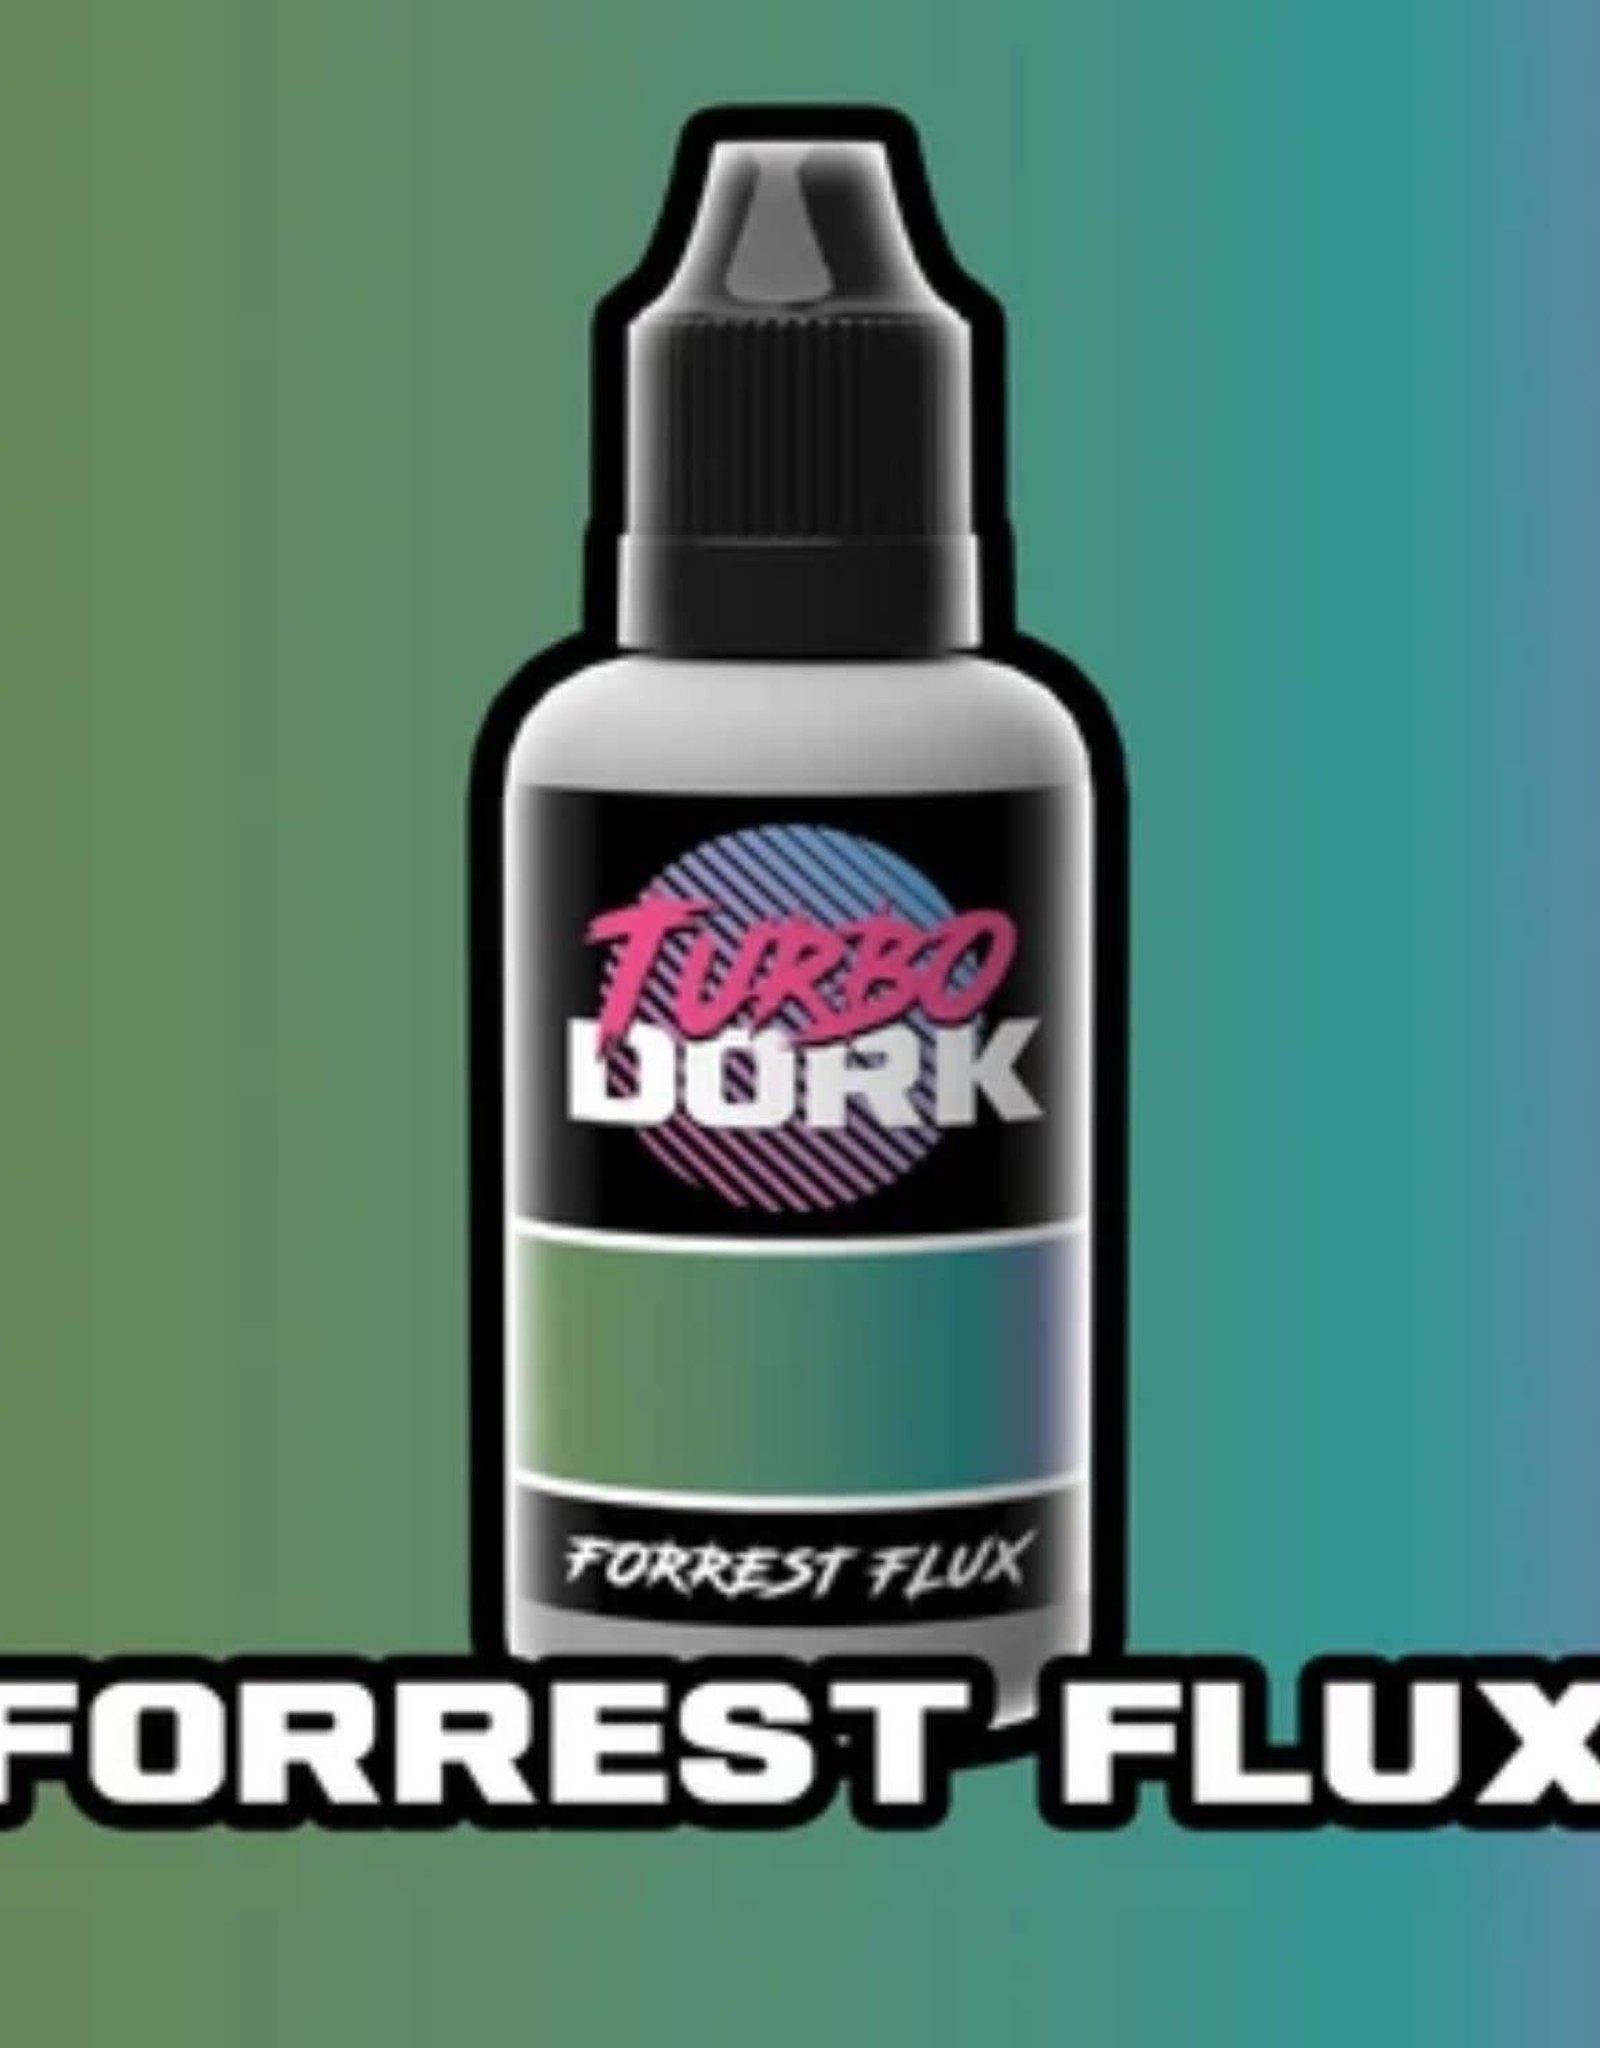 Turbo Dork Forrest Flux - Turboshift